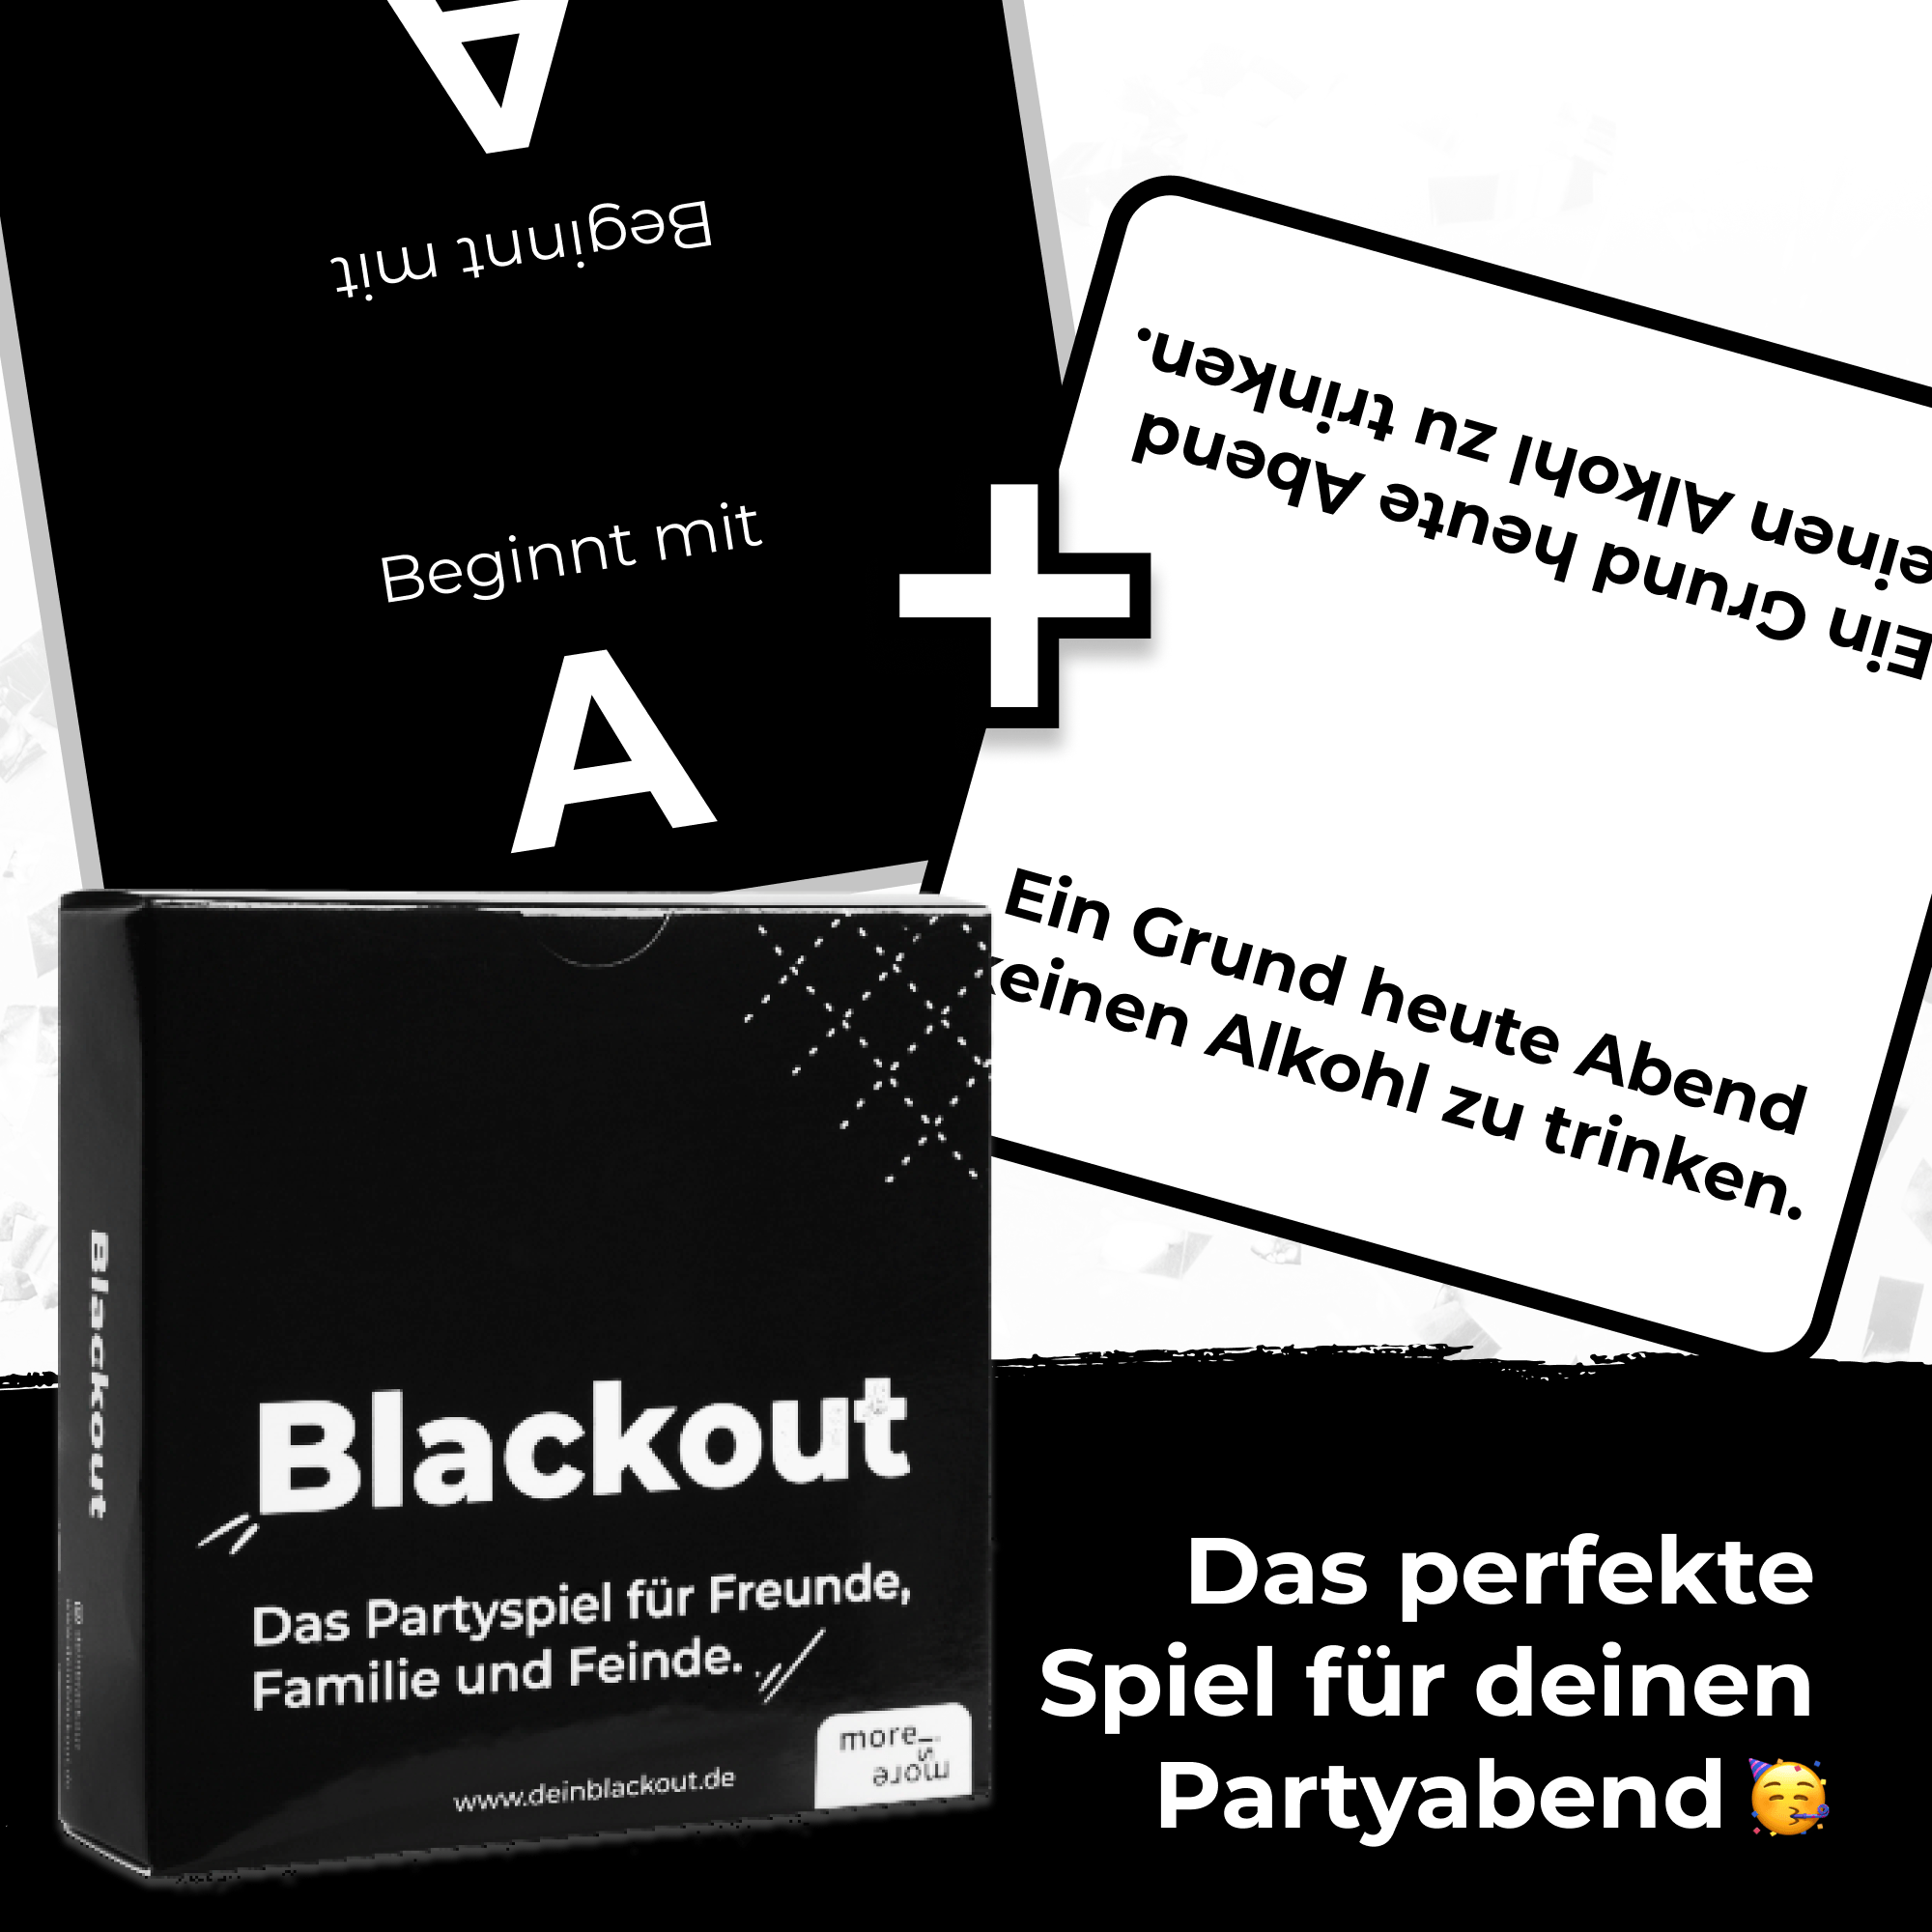 Blackout Karten für den Partyabend